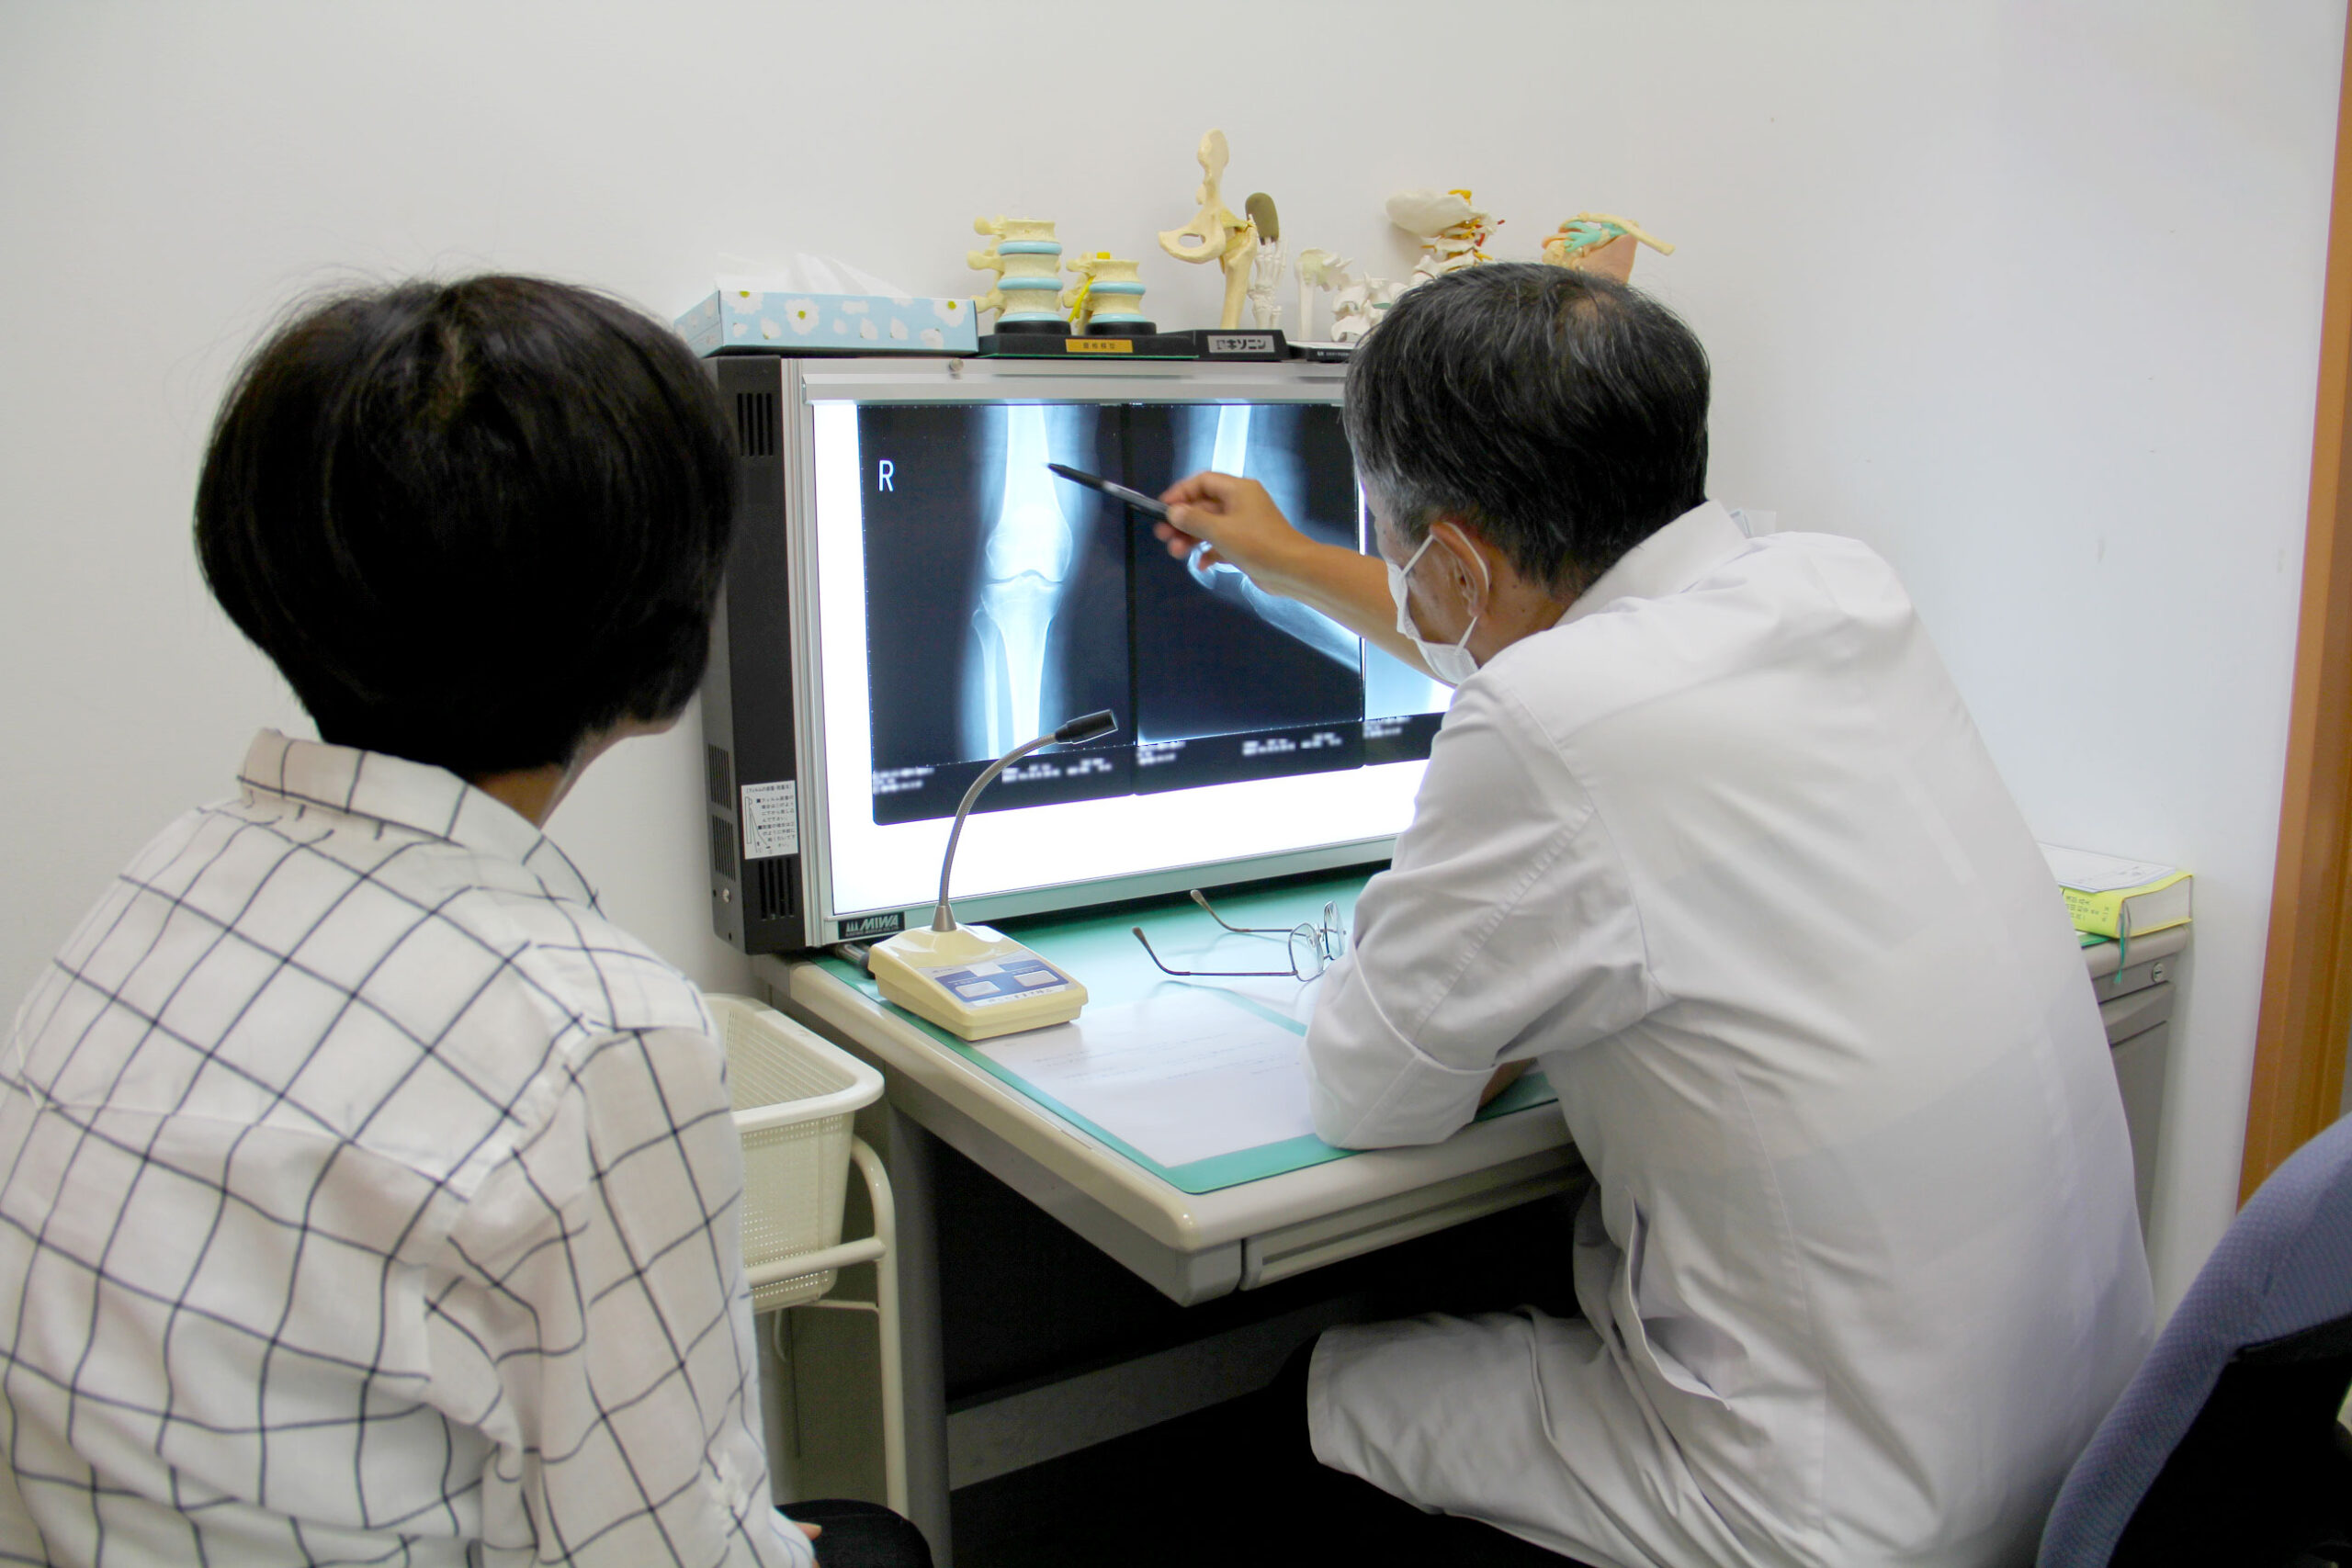 医療法人 三省会 本多病院 千葉県香取市にある病院です。内科、外科、整形外科、呼吸器内科、精神科の診療を行います。